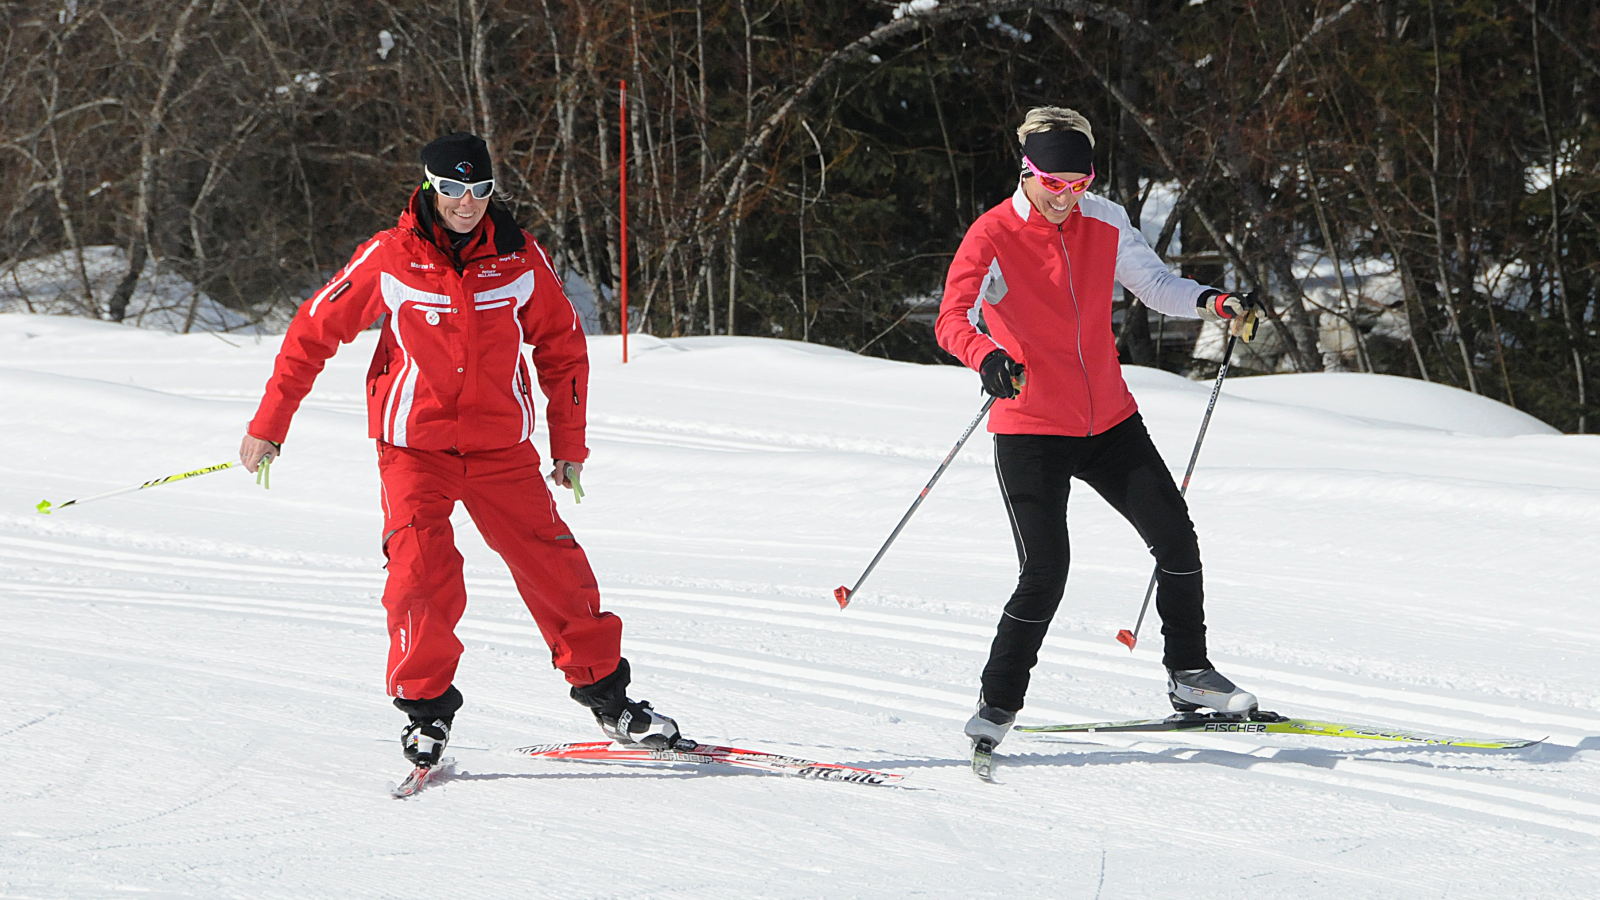 Cours privés ski de fond